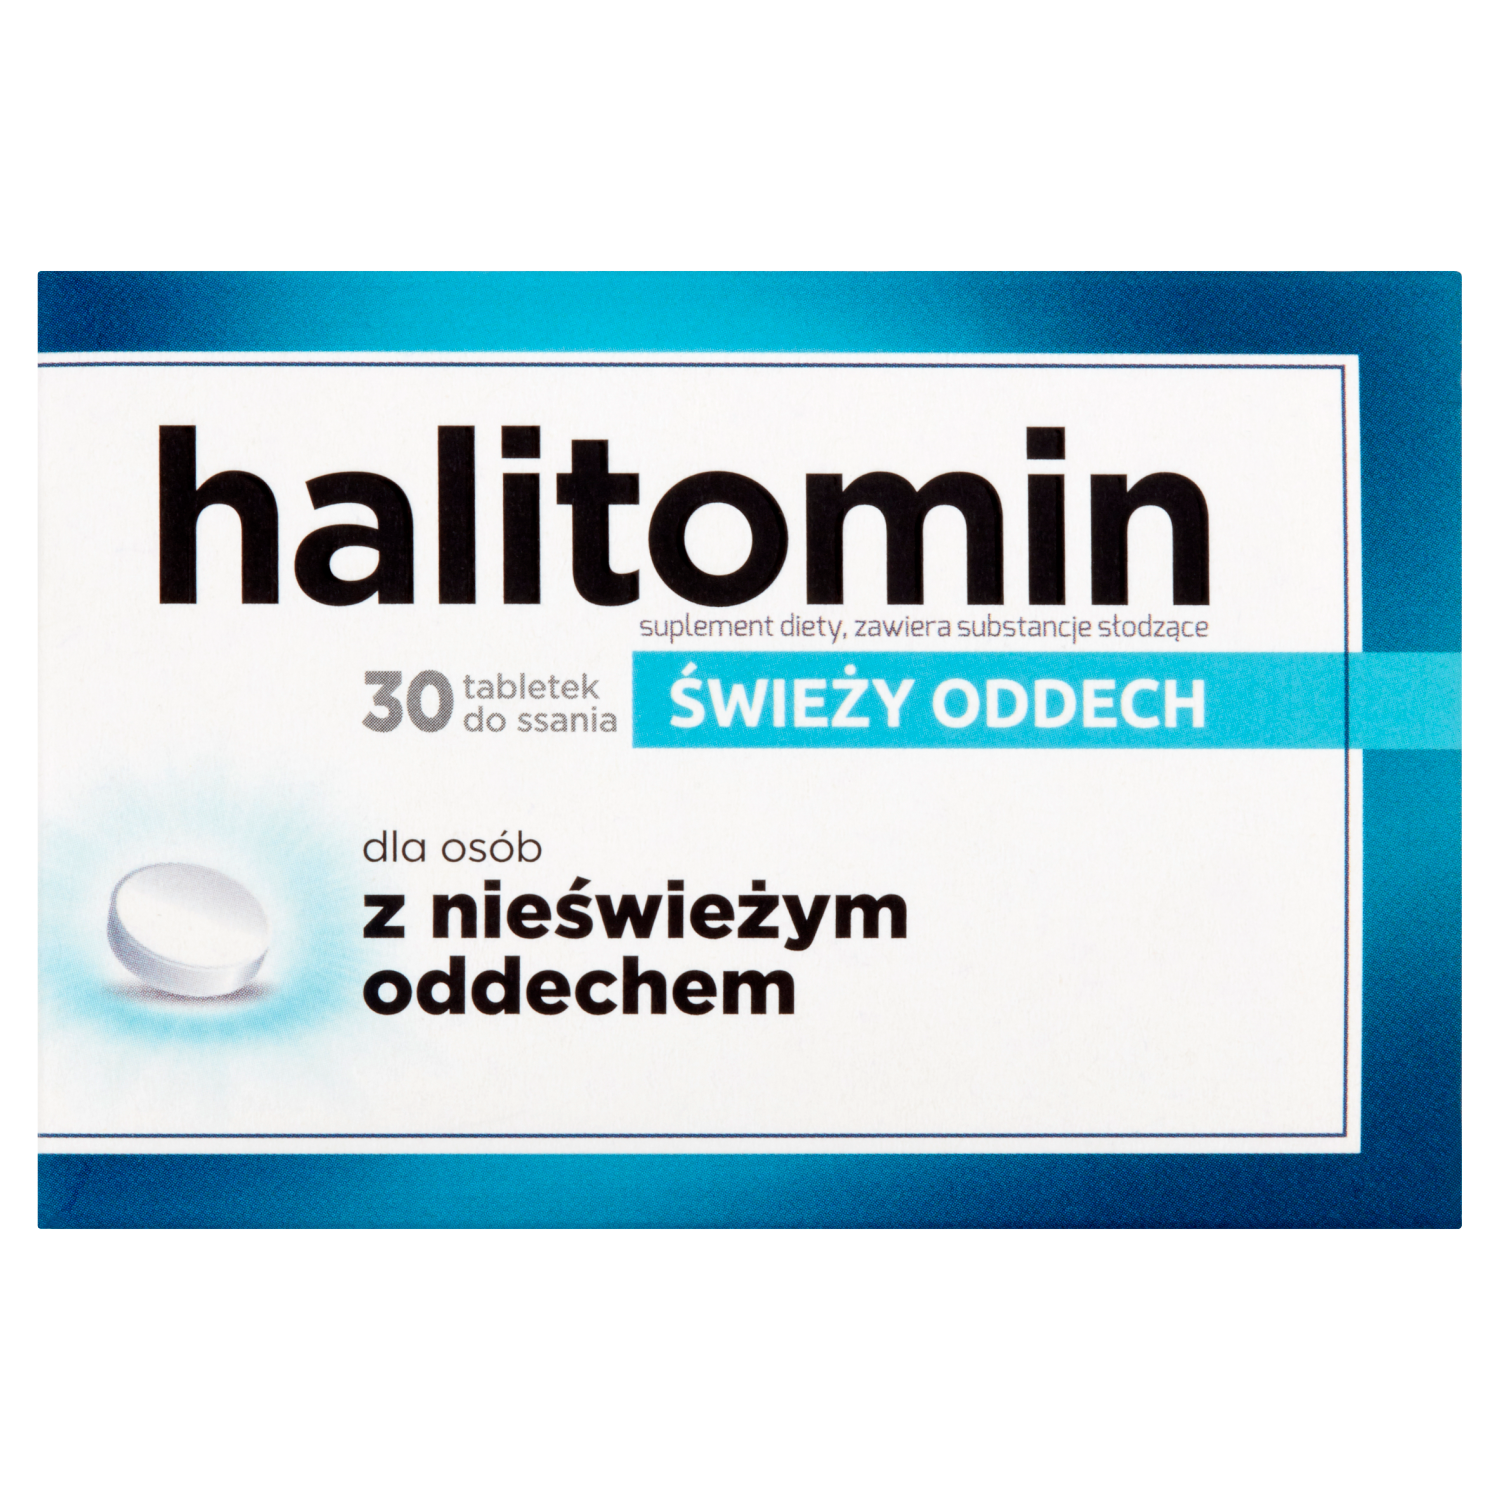 sesja биологически активная добавка 50 таблеток 1 упаковка Halitomin биологически активная добавка, 30 таблеток/1 упаковка